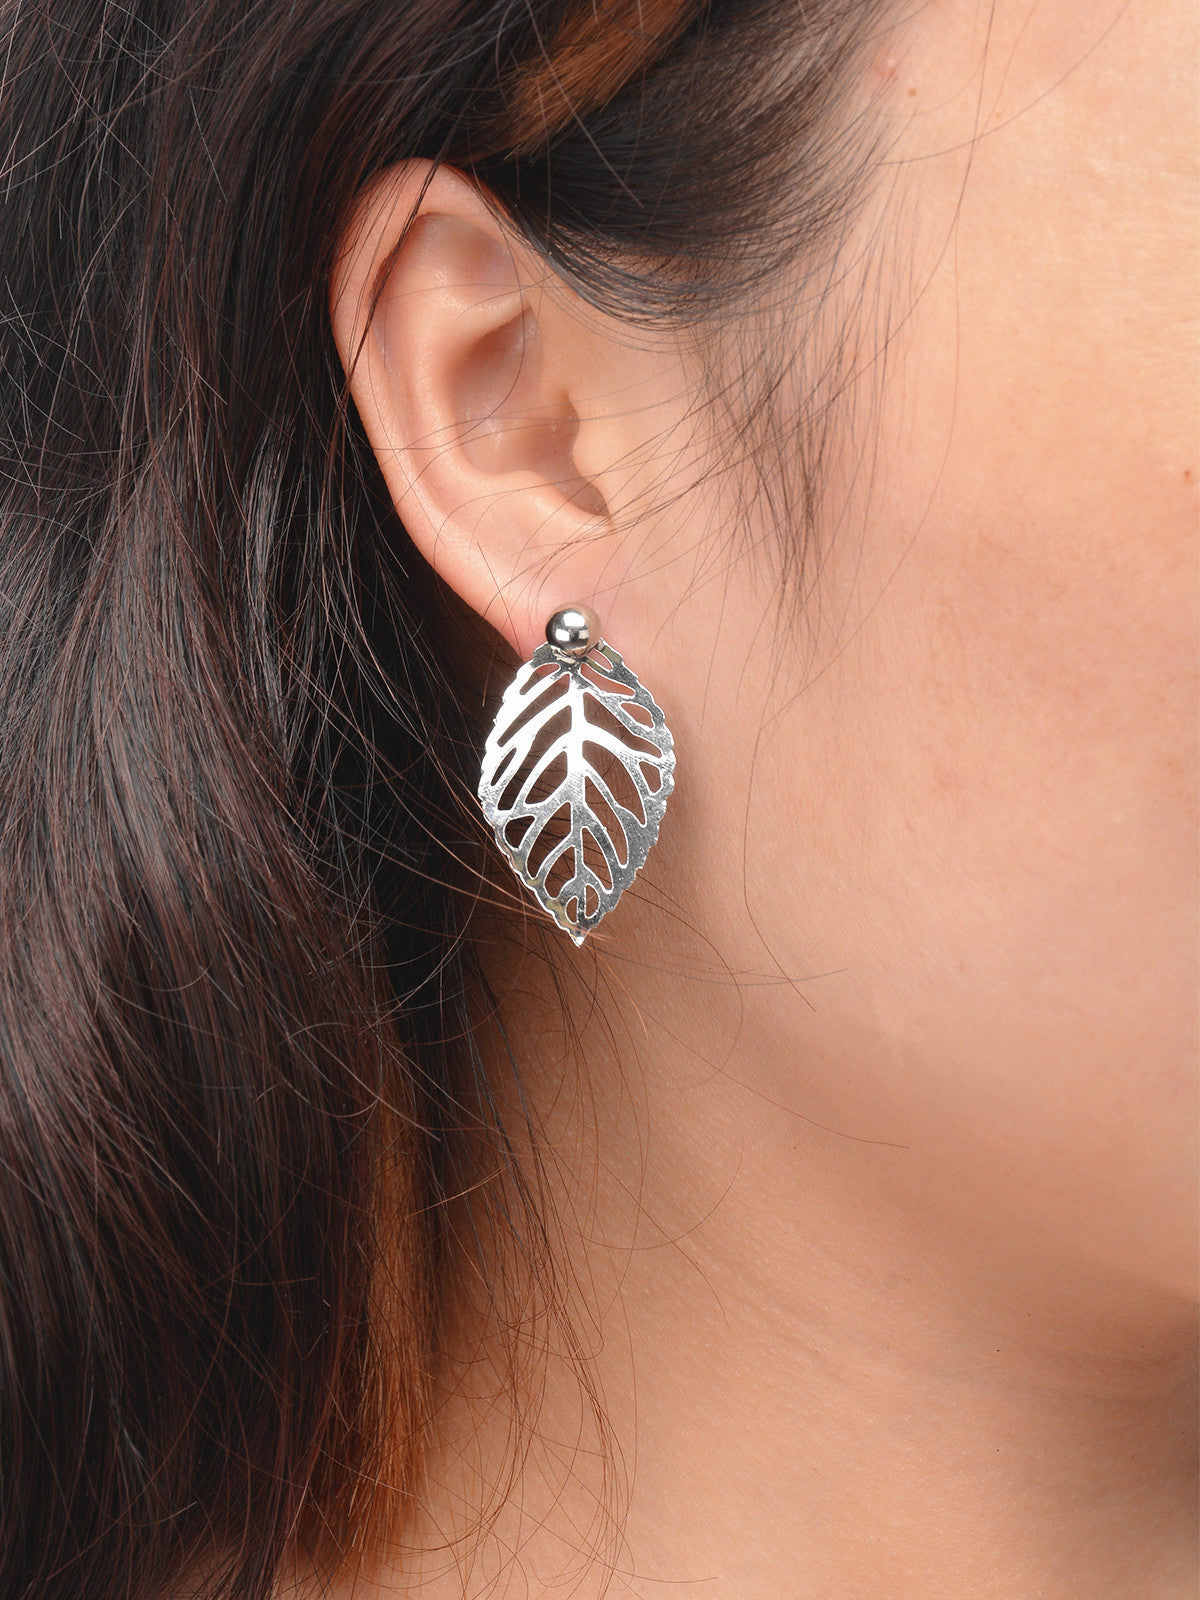 Fashion Leaf Women's Earrings